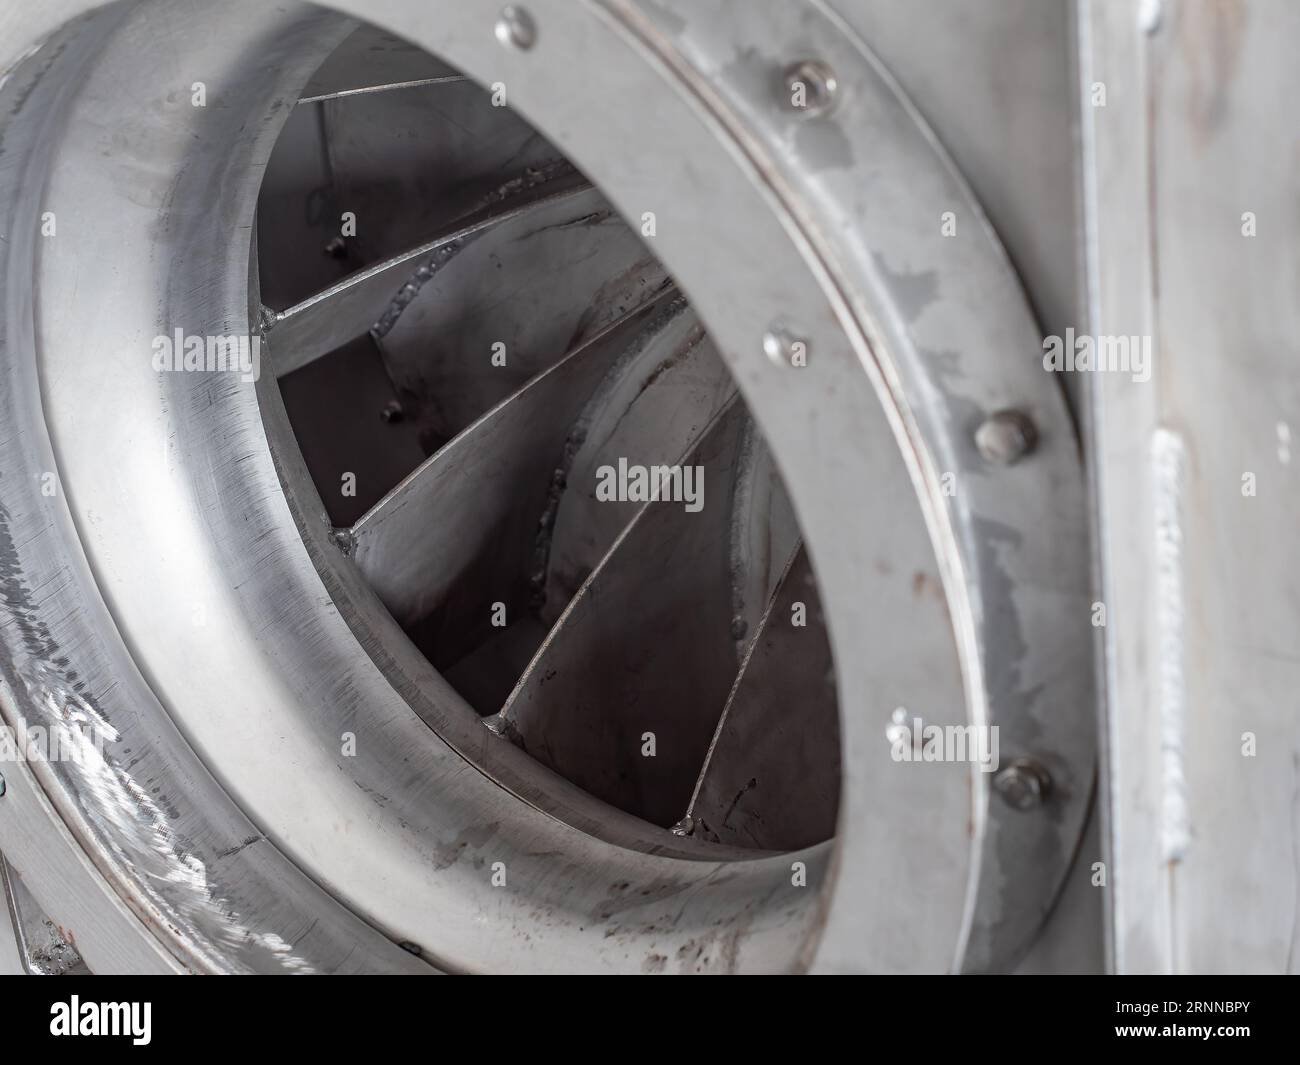 Gros plan détail du ventilateur centrifuge en acier inoxydable pendant la production dans un atelier industriel. Faible profondeur de champ avec des parties de la pale de la turbine Banque D'Images